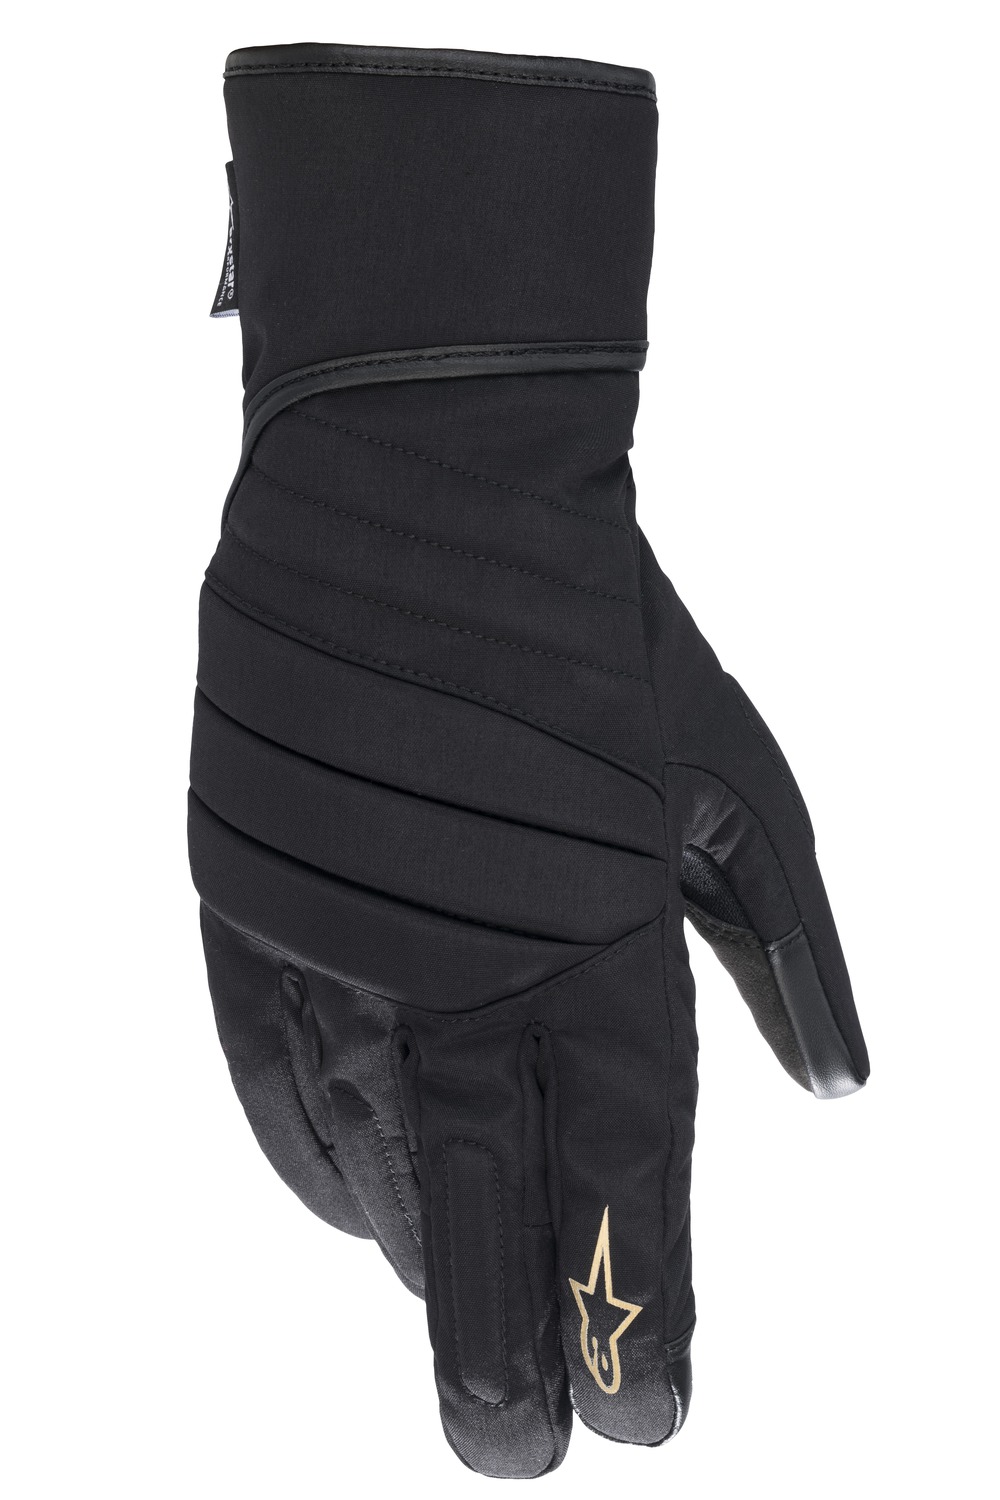 rukavice STELLA SR-3 2 DRYSTAR, ALPINESTARS, dámské (černá) 2024